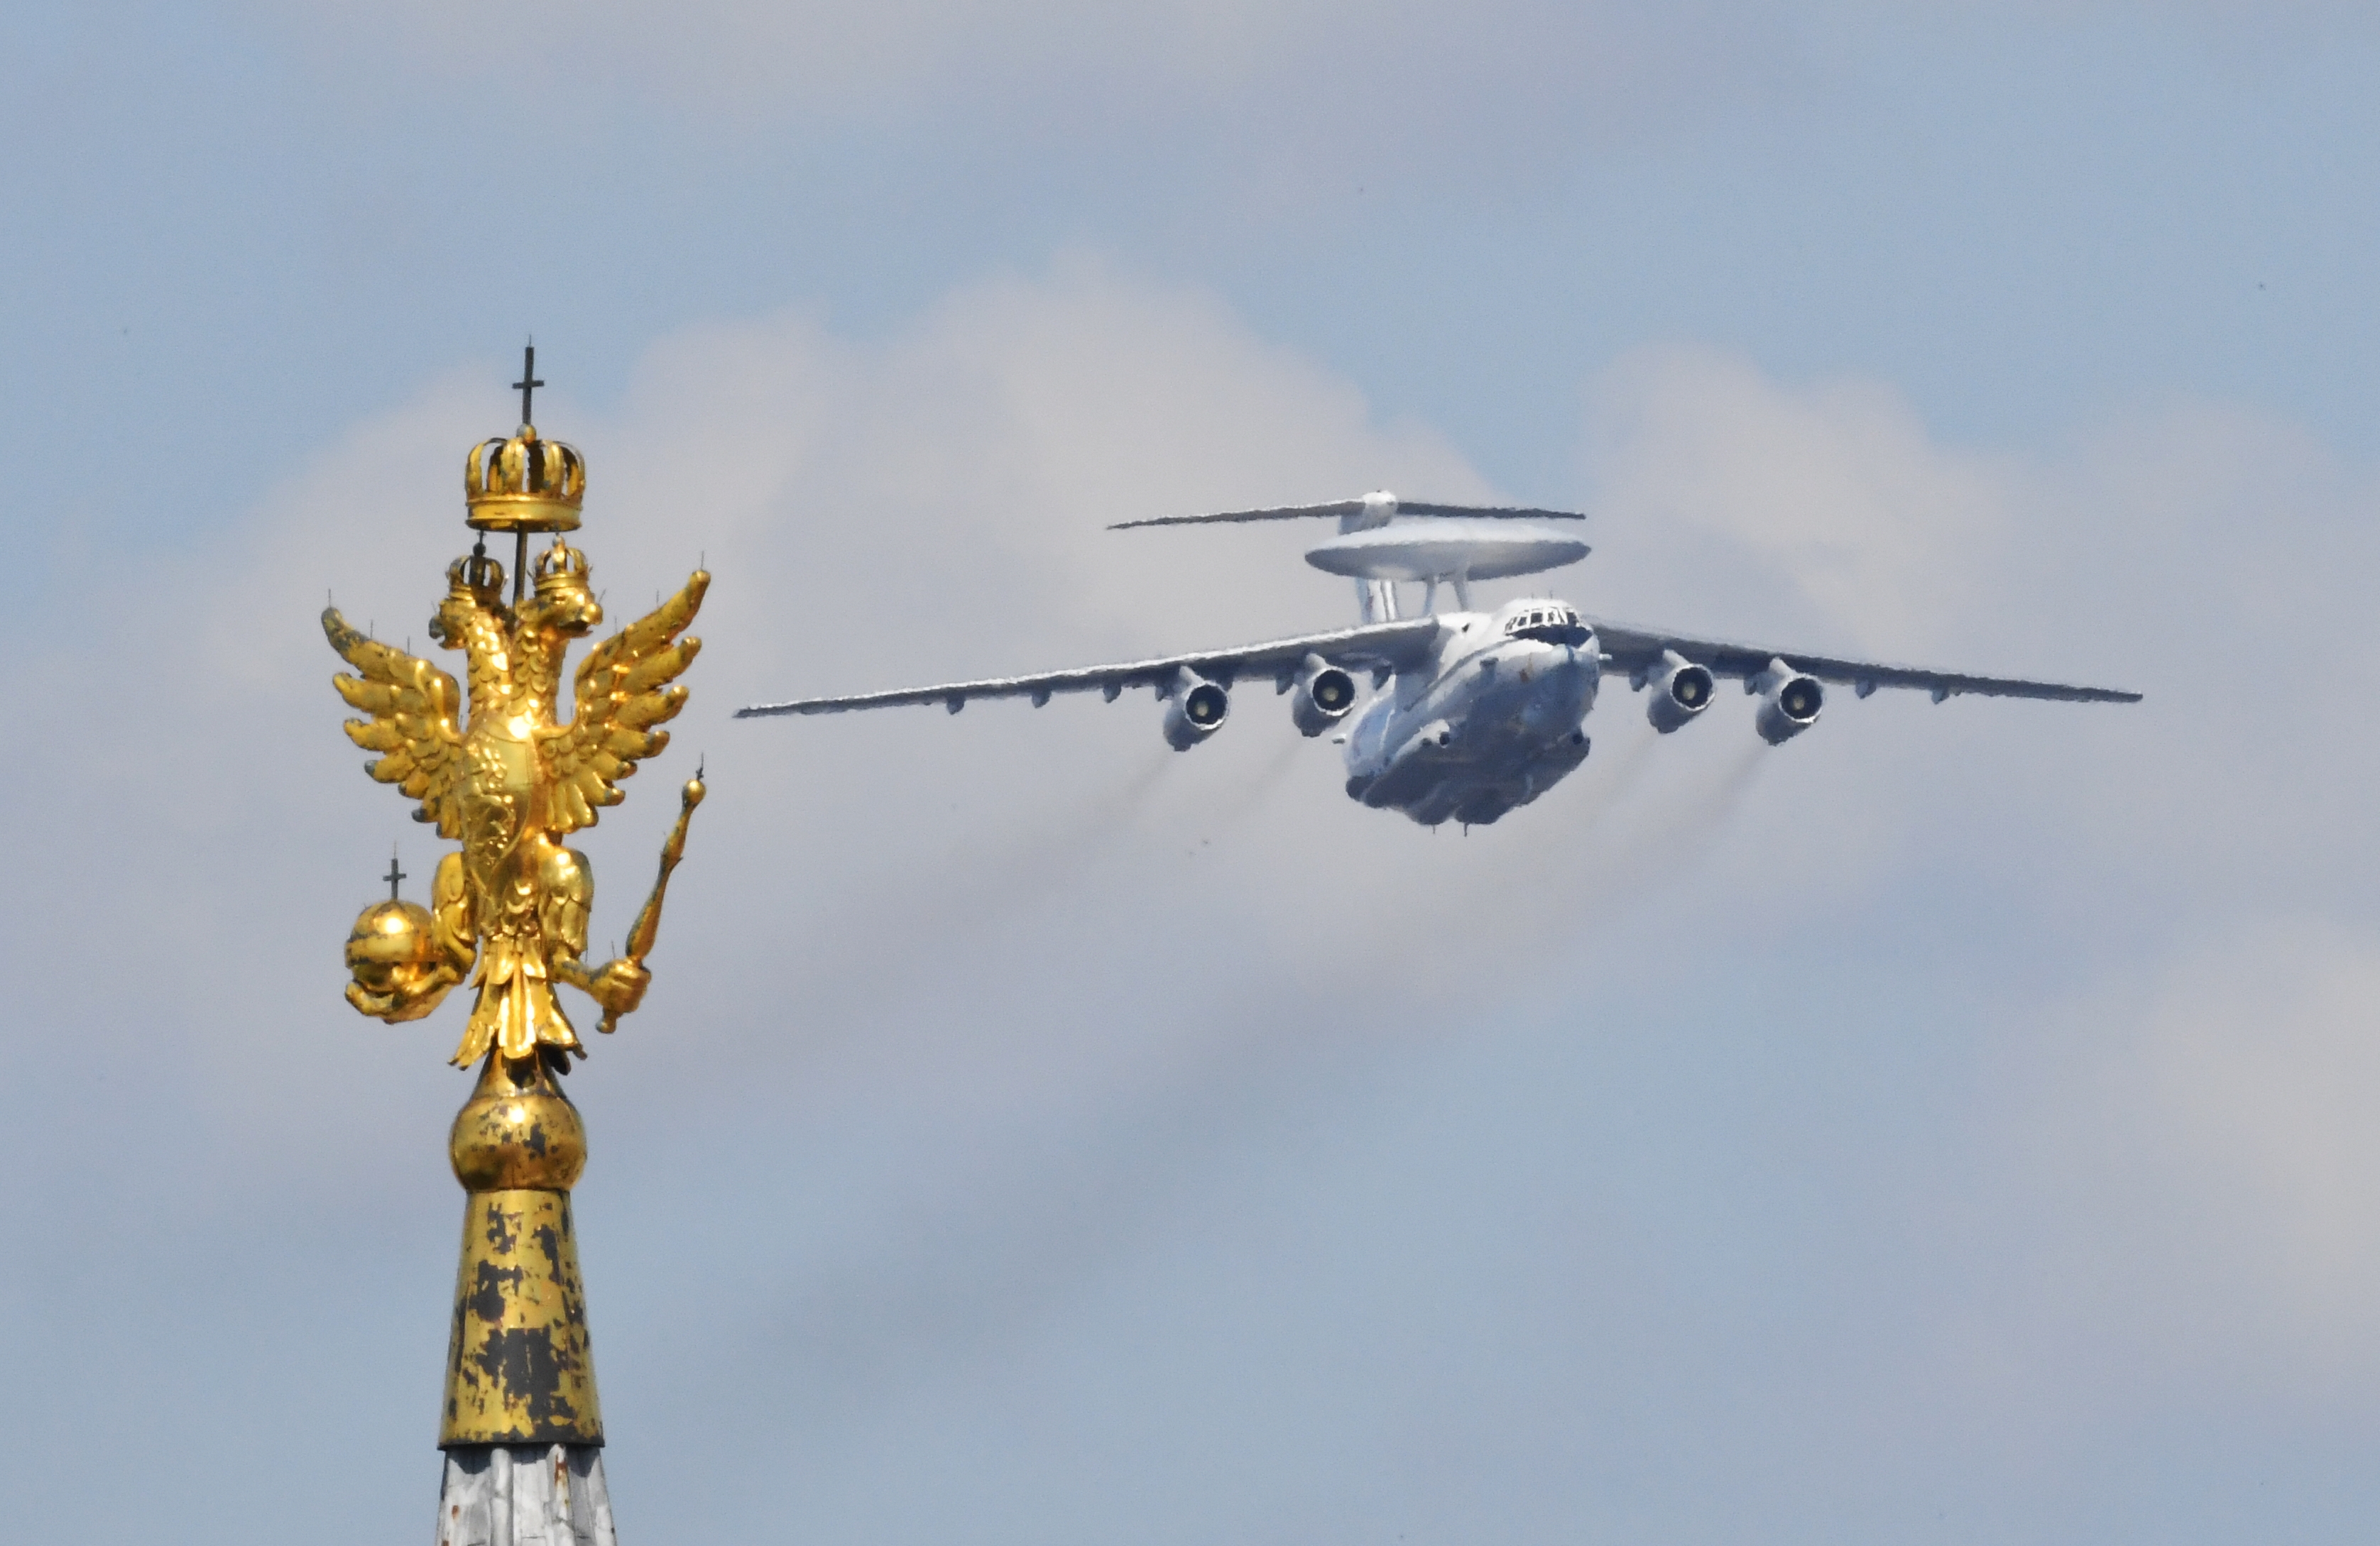 Rosja traci samolot rozpoznawczy A-50 i Ił-22, gdy obwinia się obronę przeciwlotniczą Putina